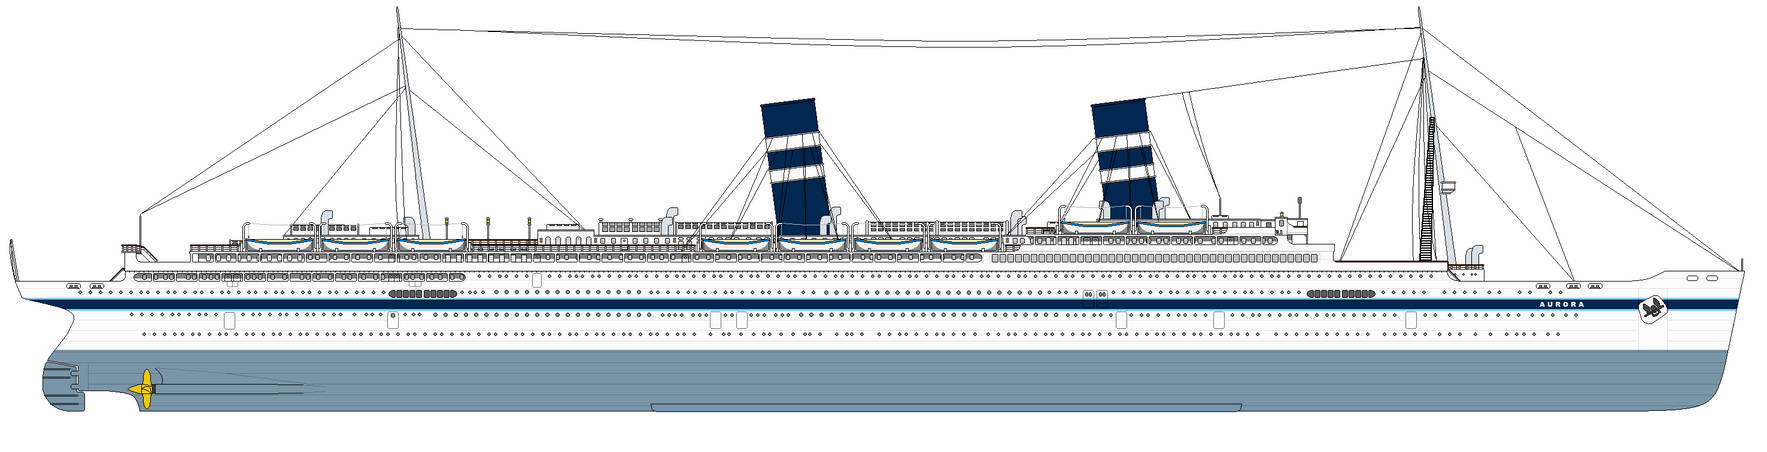 SS Aurora (1910)